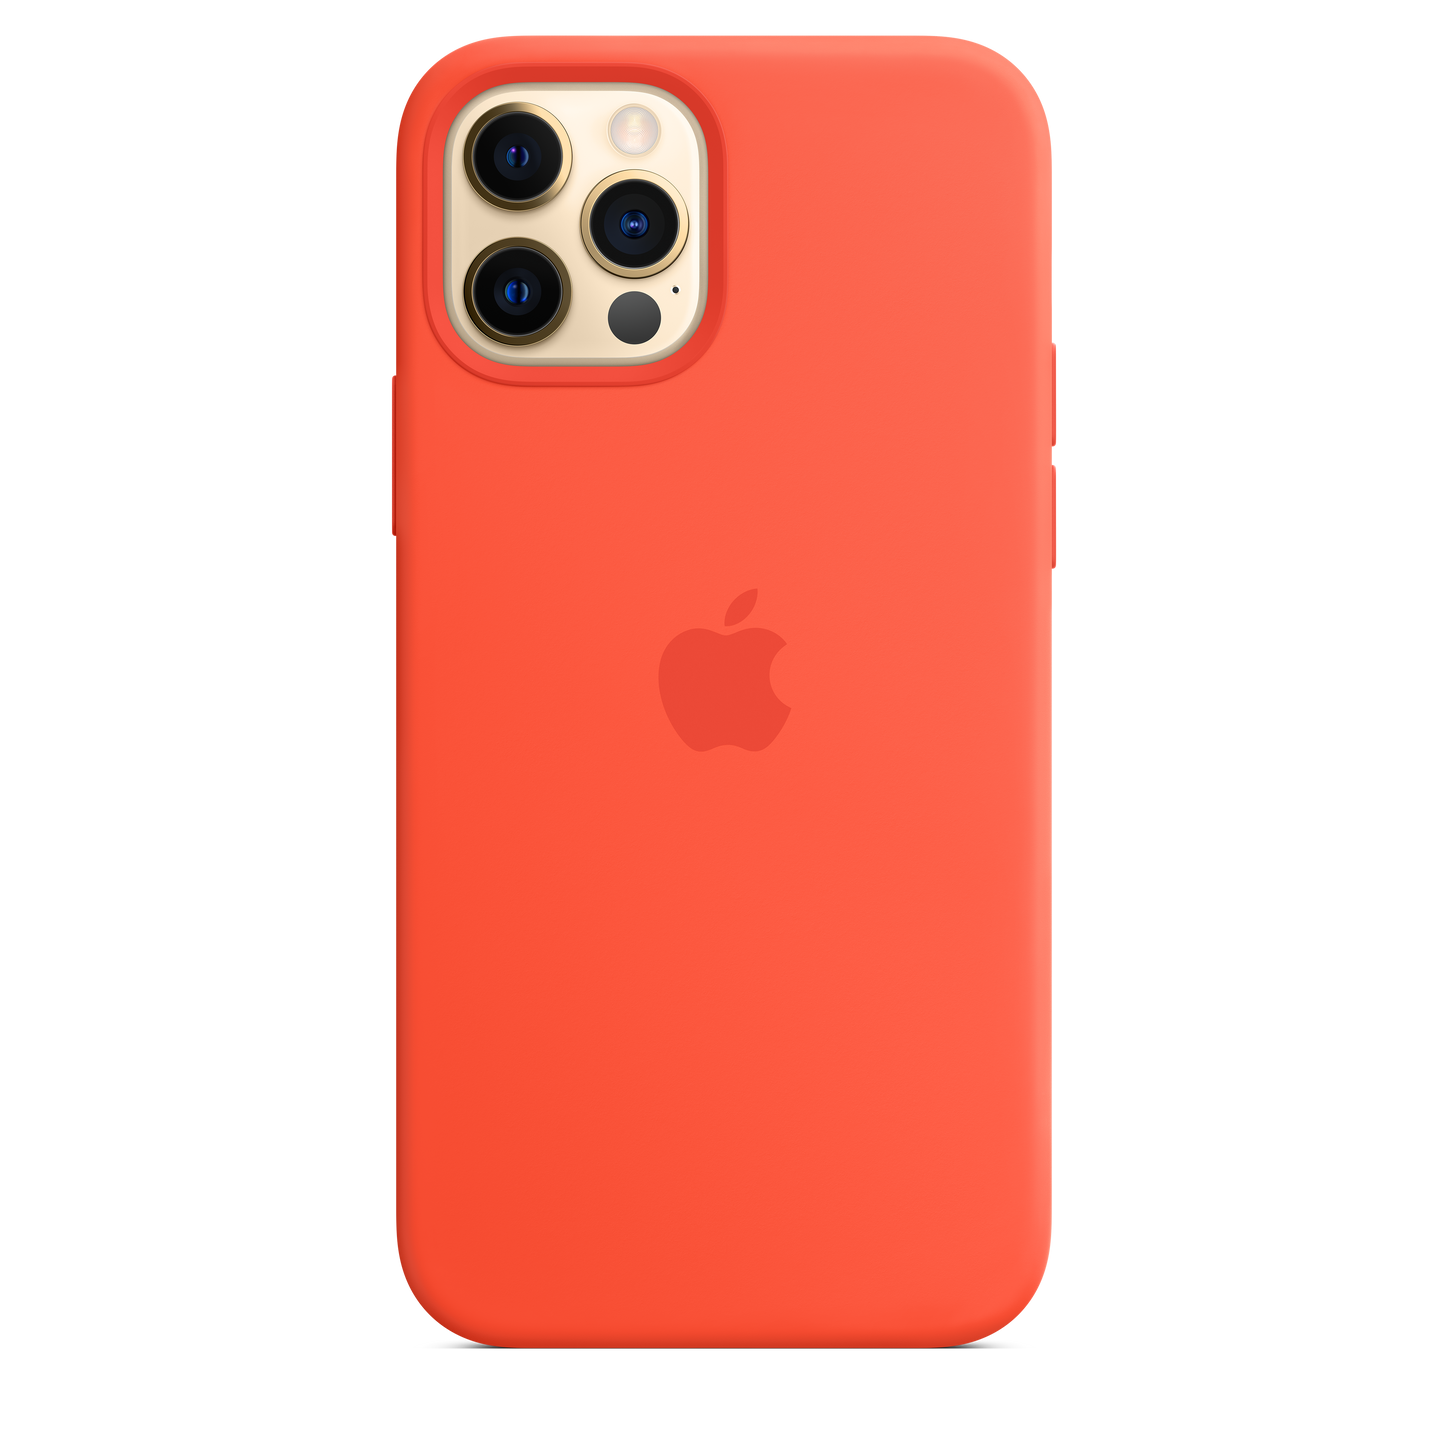 Funda de silicona con MagSafe para el iPhone 12 y iPhone 12 Pro, Naranja eléctrico - Rossellimac